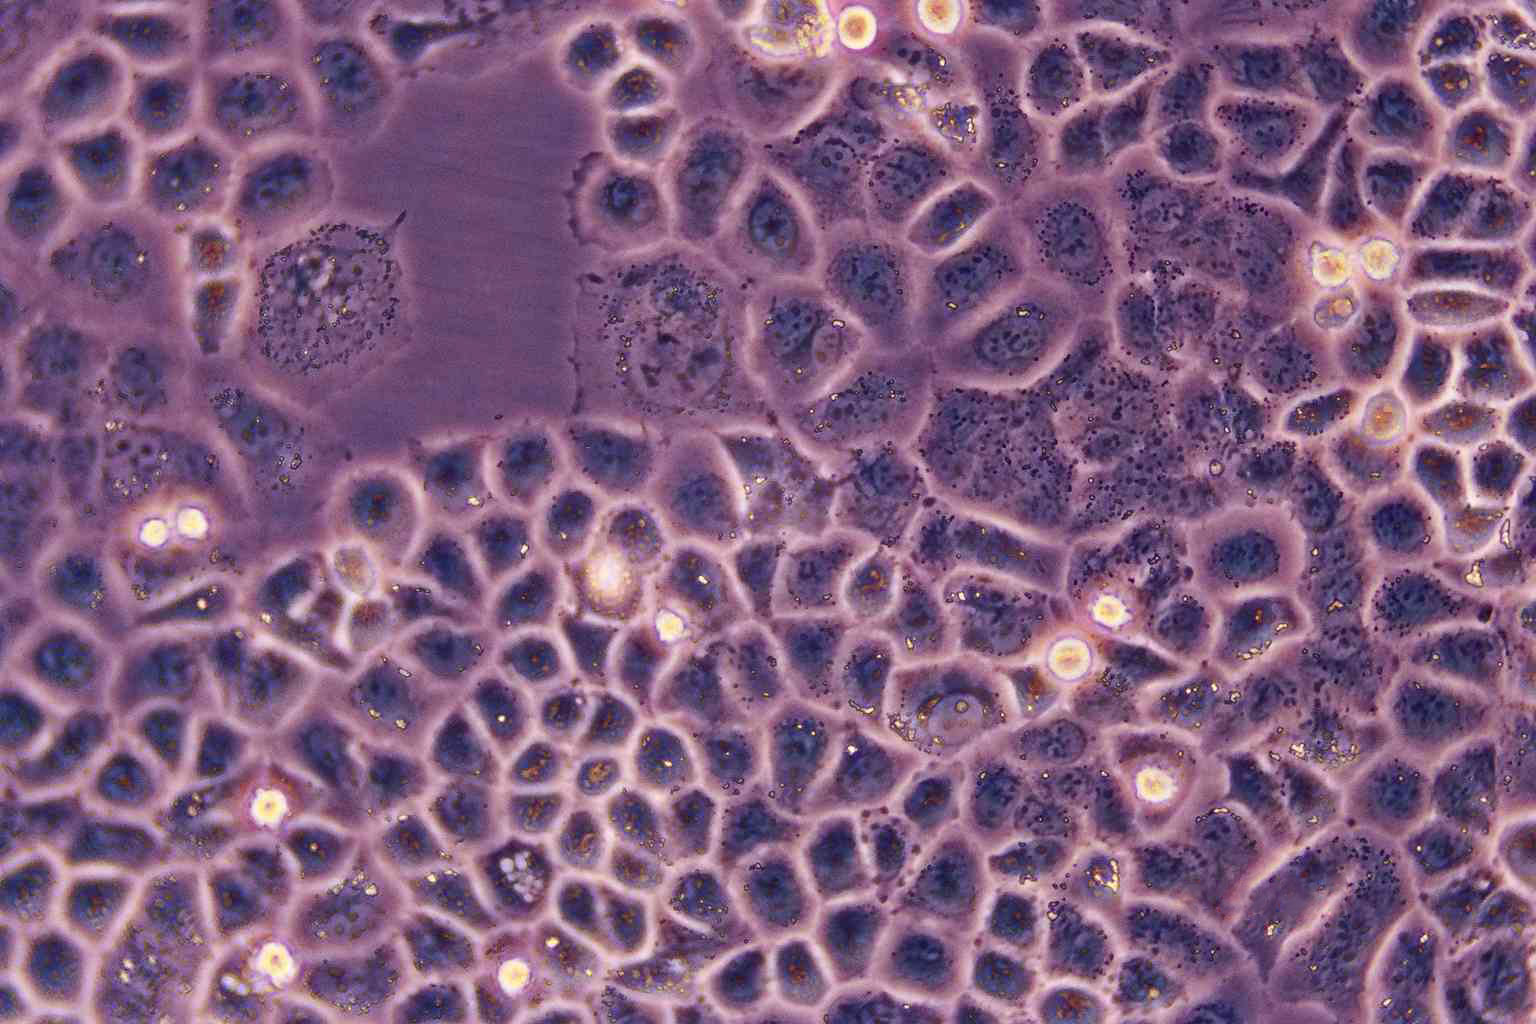 HEC-151人子宫内膜癌复苏细胞(附STR鉴定报告)